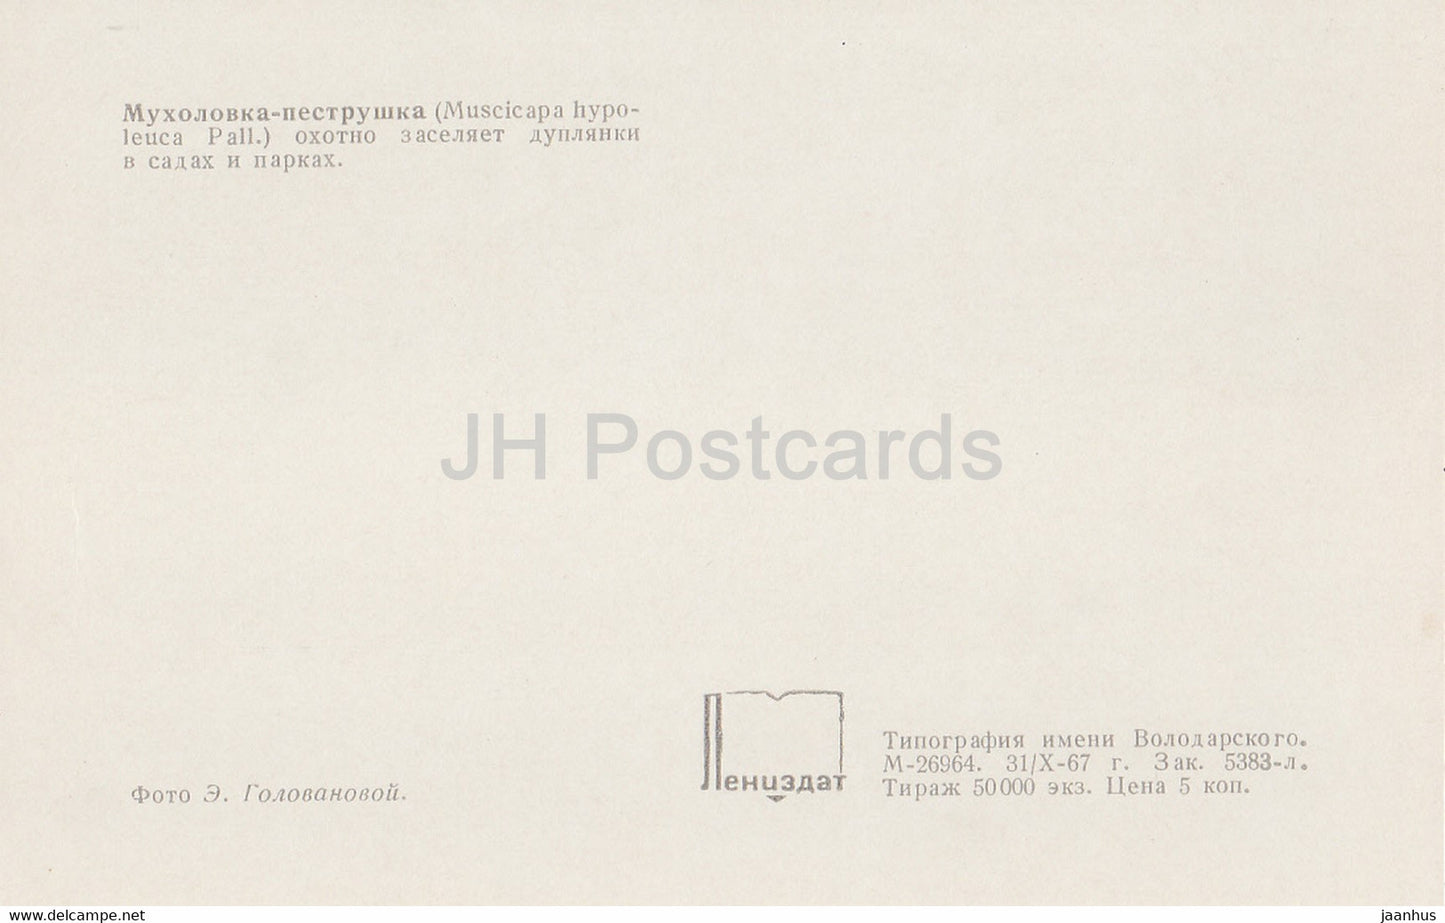 Europäischer Trauerschnäpper – Ficedula hypoleuca – Vögel – 1968 – Russland UdSSR – unbenutzt